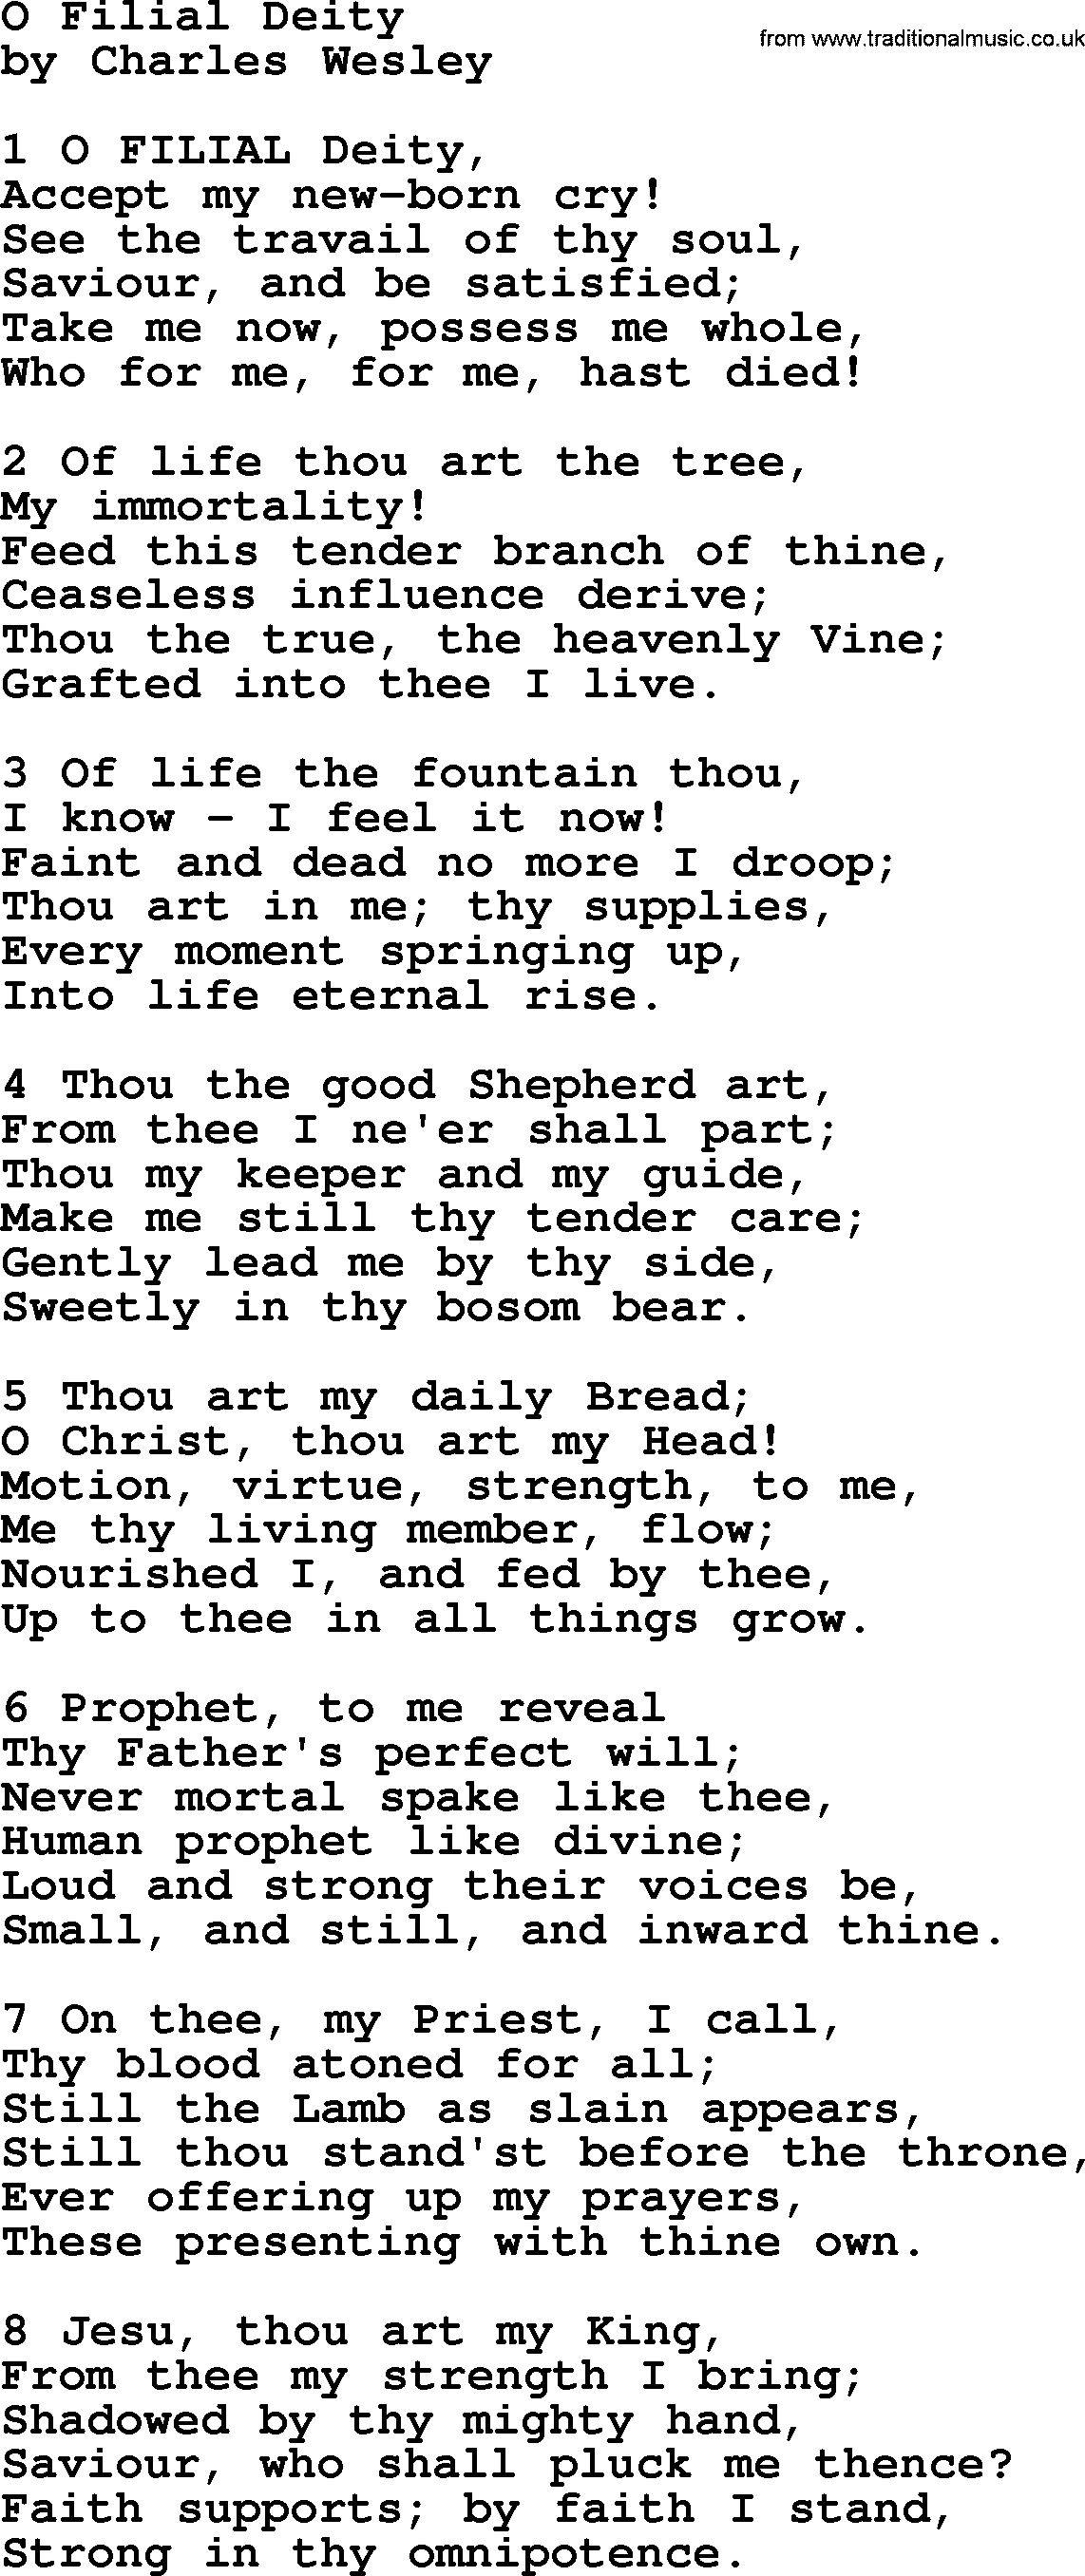 Charles Wesley hymn: O Filial Deity, lyrics